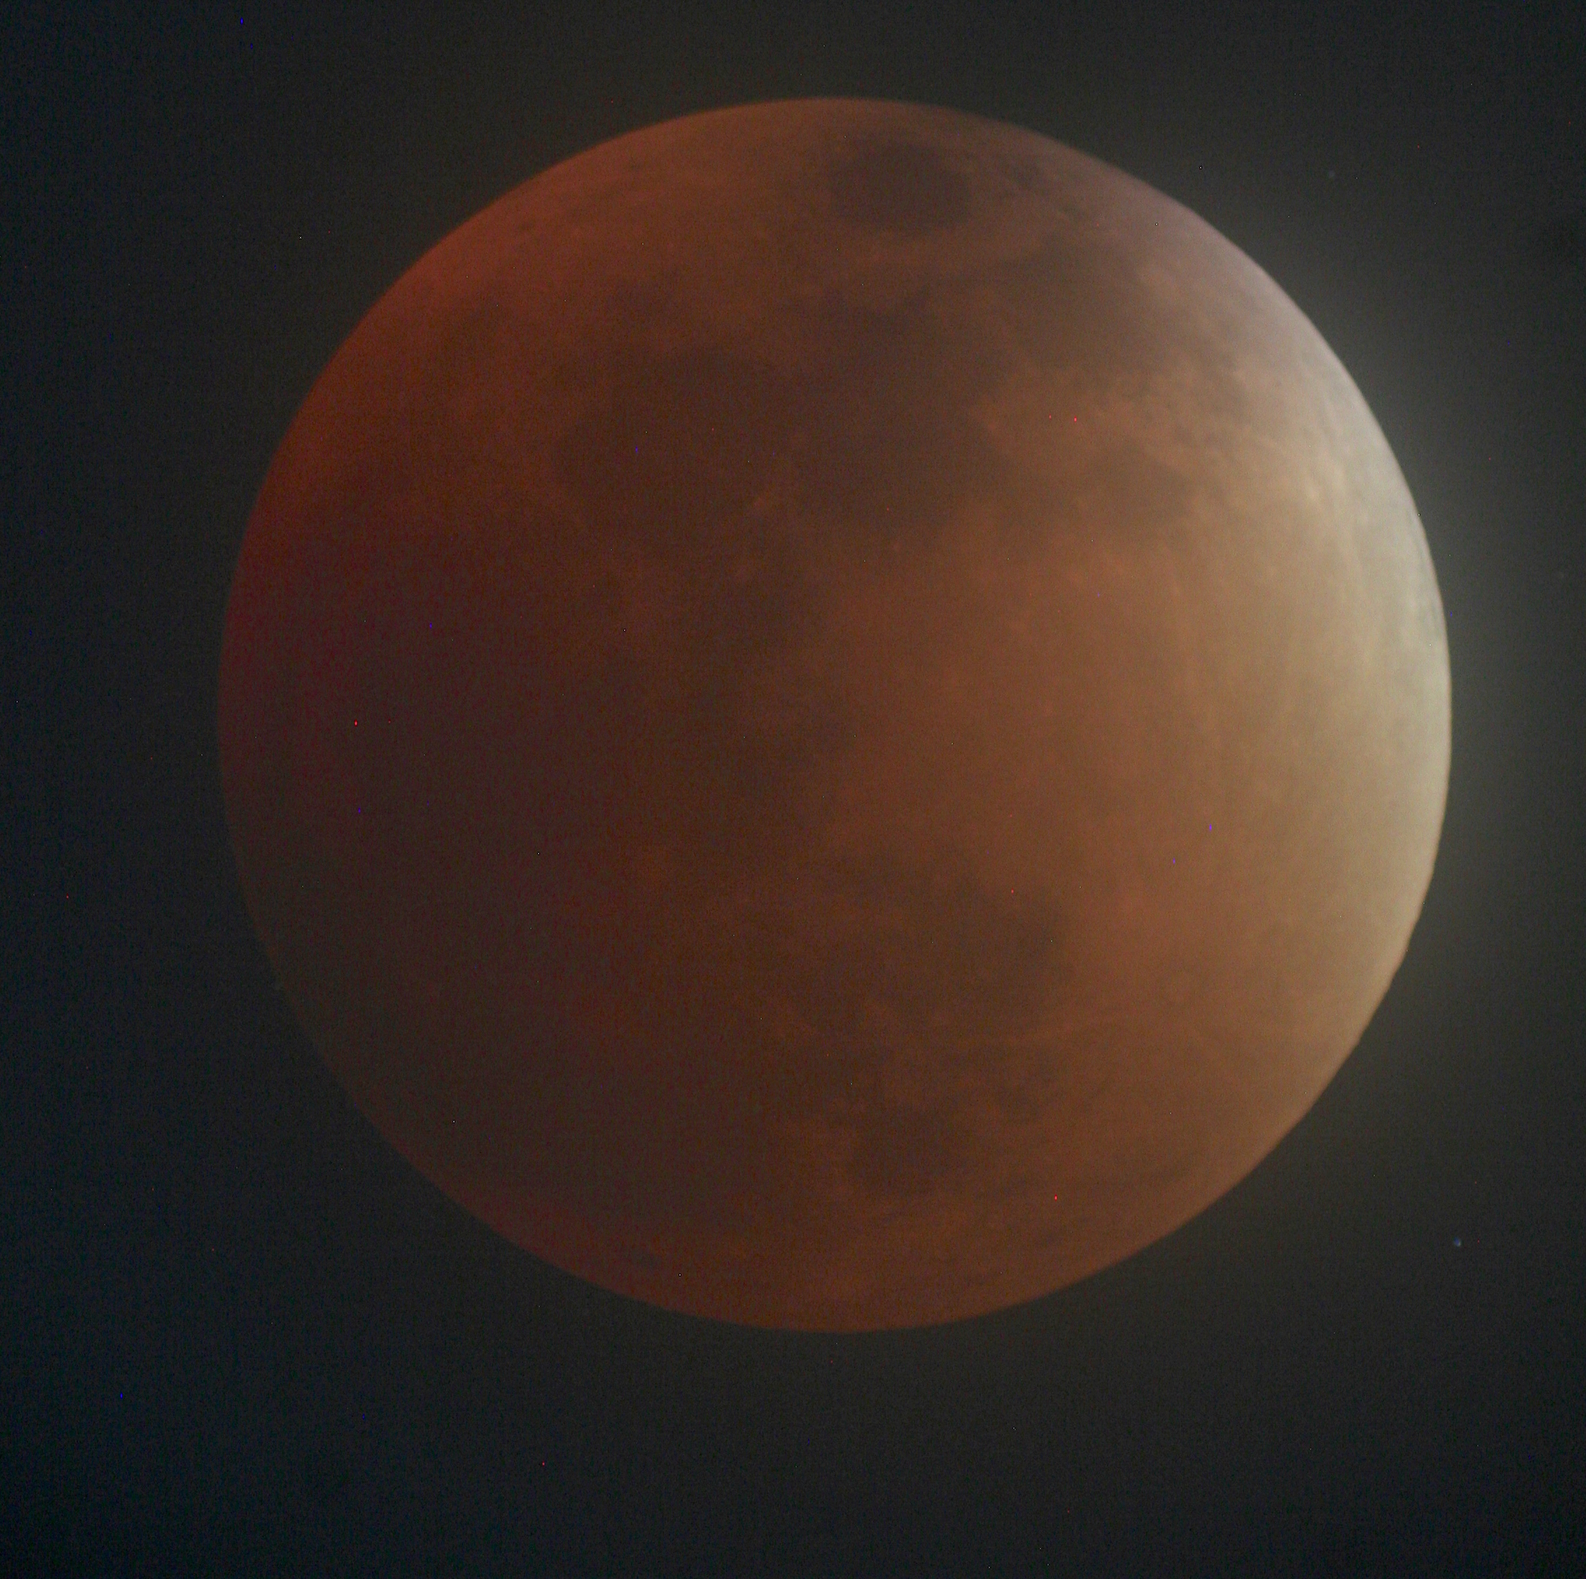 UA Observatory Open Jan. 20 for Total Lunar Eclipse